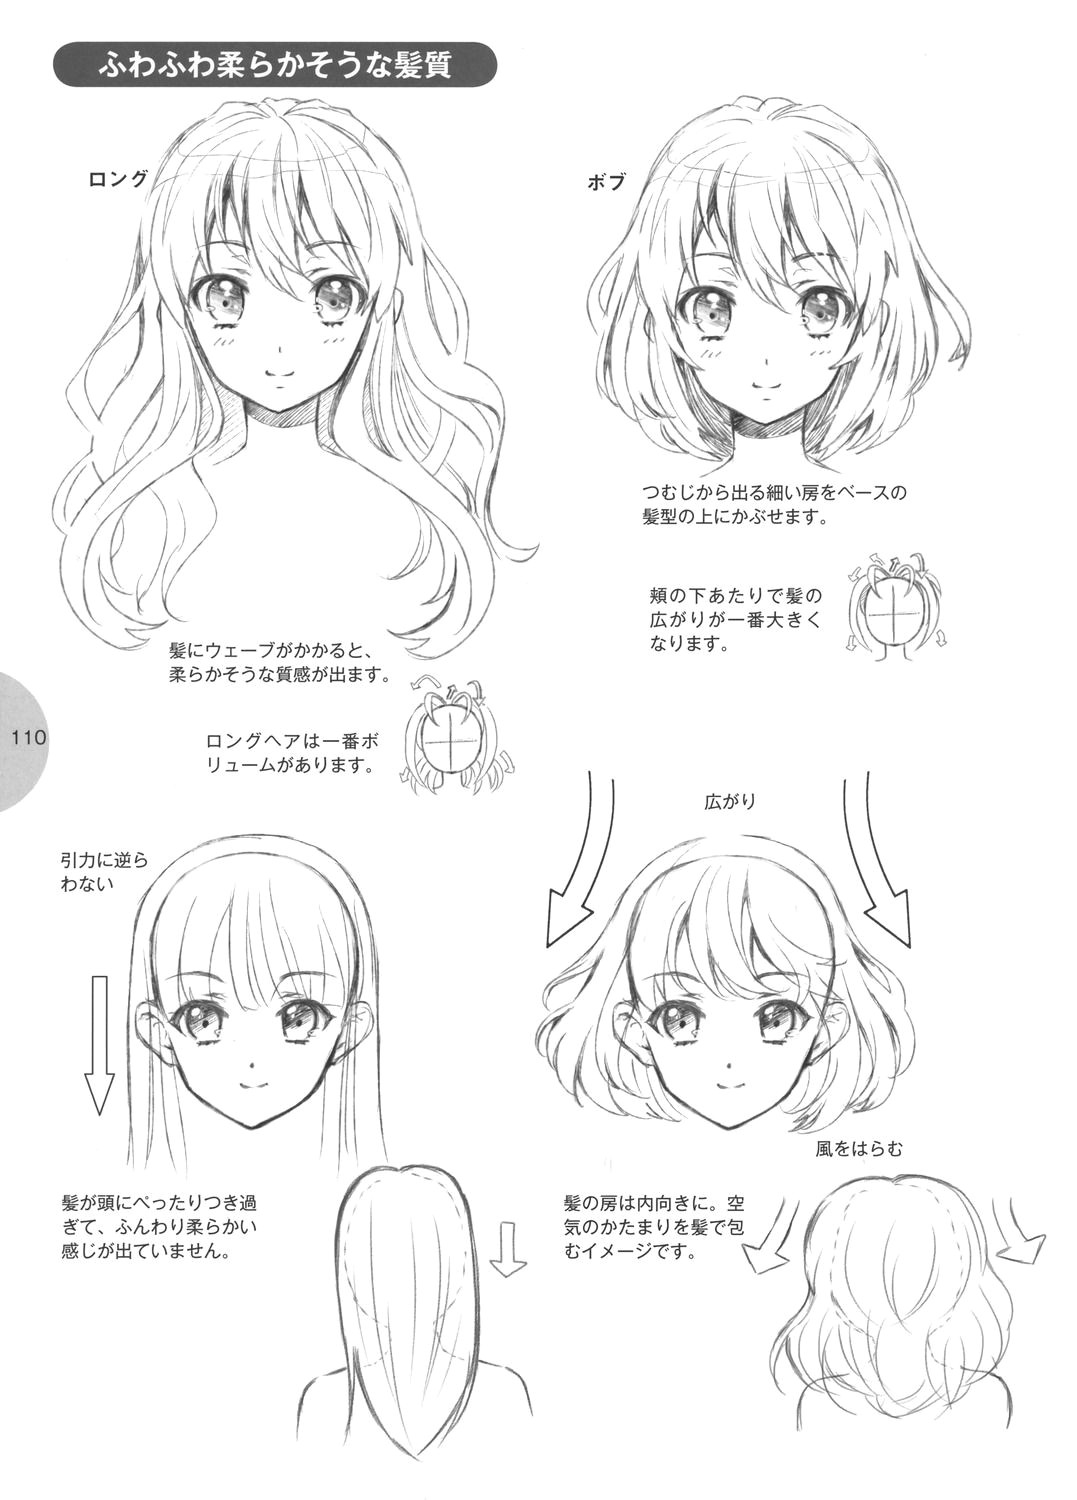 Drawing A Cartoon Hair Tutorial Hair Ae A Ae Pinterest Drawings Art and Anime Hair